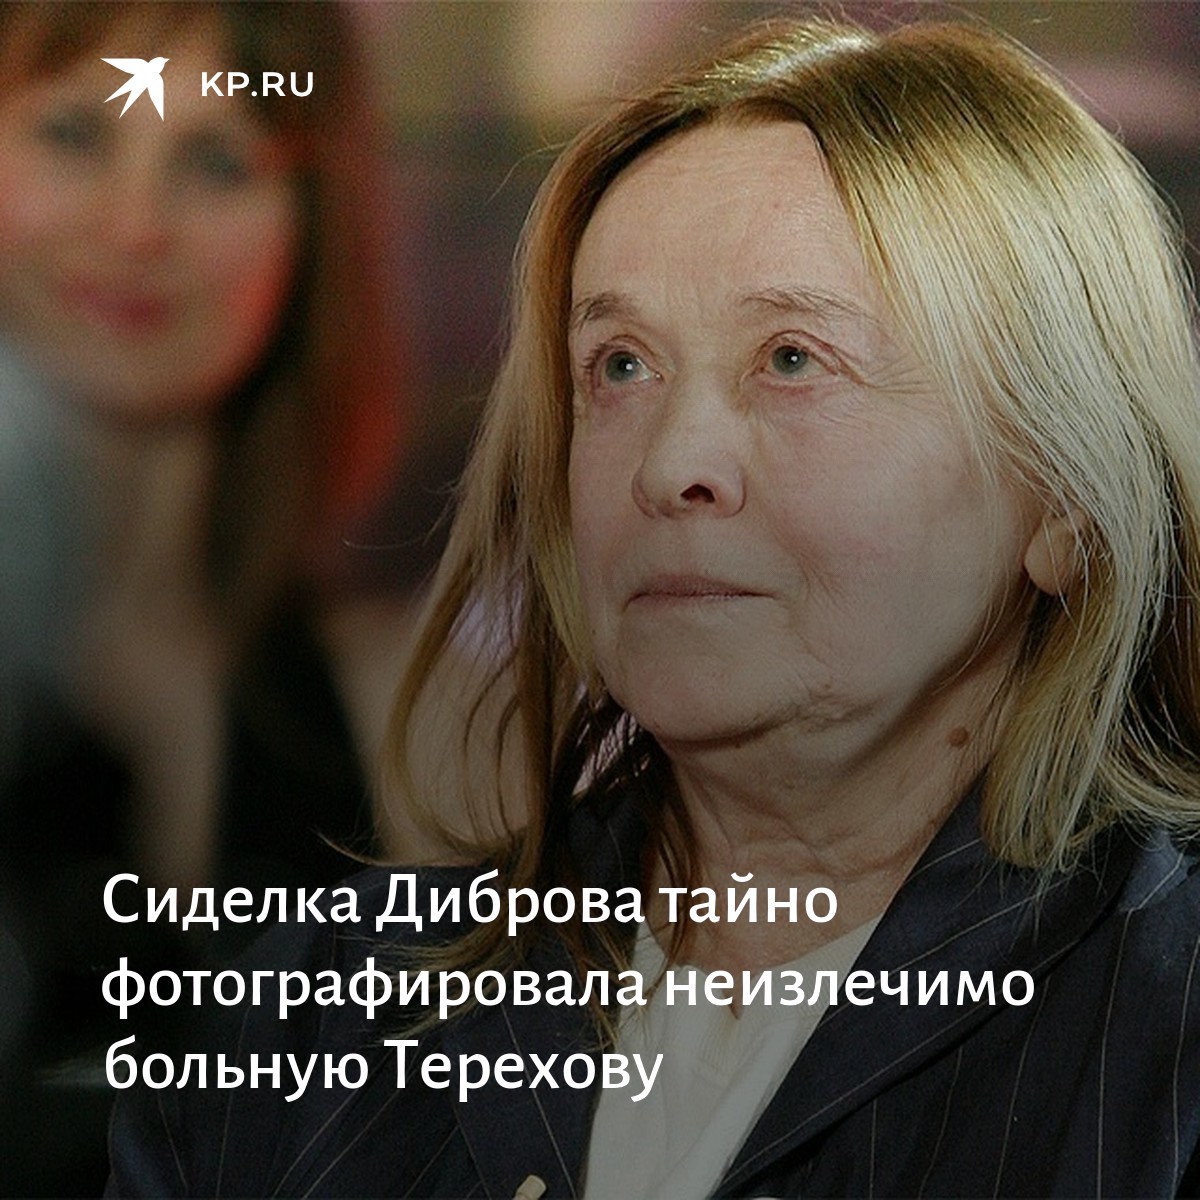 Маргарита терехова биография болезнь альцгеймера фото сейчас